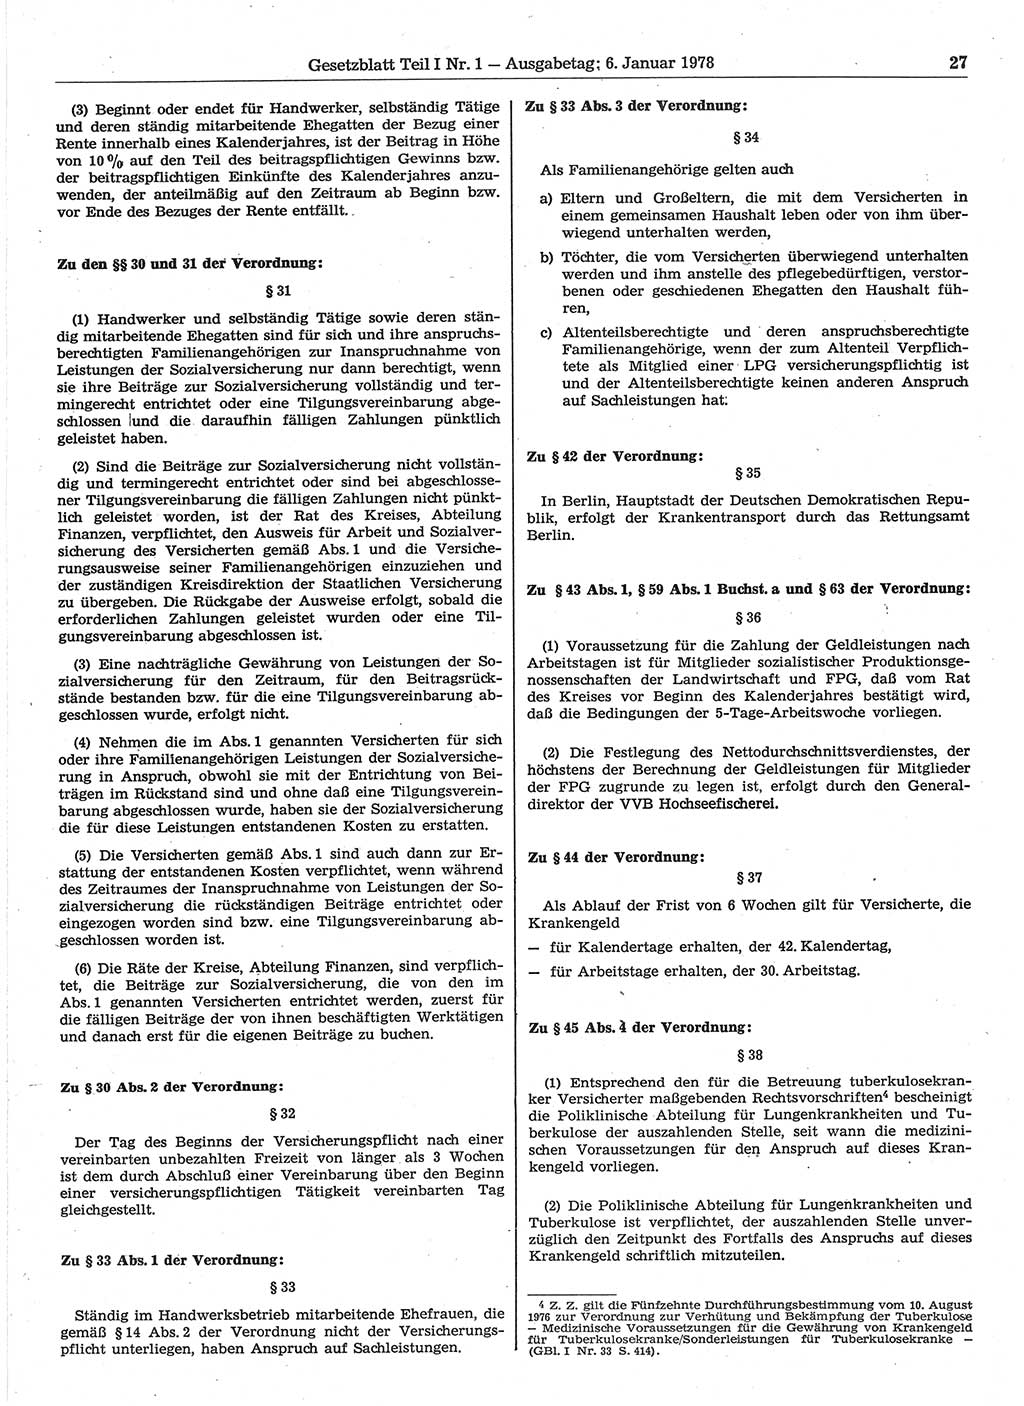 Gesetzblatt (GBl.) der Deutschen Demokratischen Republik (DDR) Teil Ⅰ 1978, Seite 27 (GBl. DDR Ⅰ 1978, S. 27)